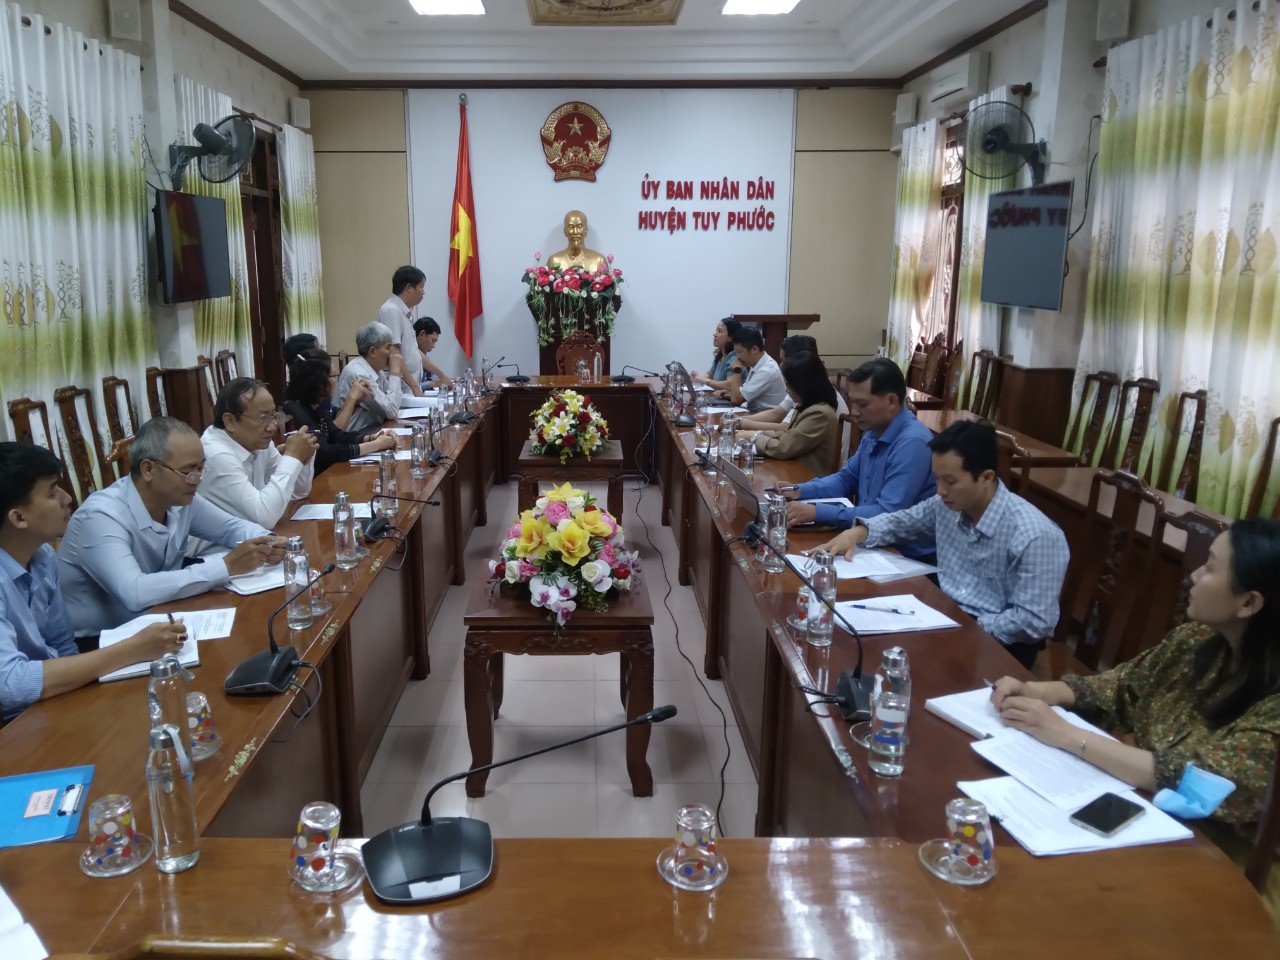 Đại diện UBND huyện Tuy Phước báo cáo kết quả hoạt động KH&CN năm 2022 với đoàn công tác Sở KH&CN Bình Định. Ảnh: Trần Thành